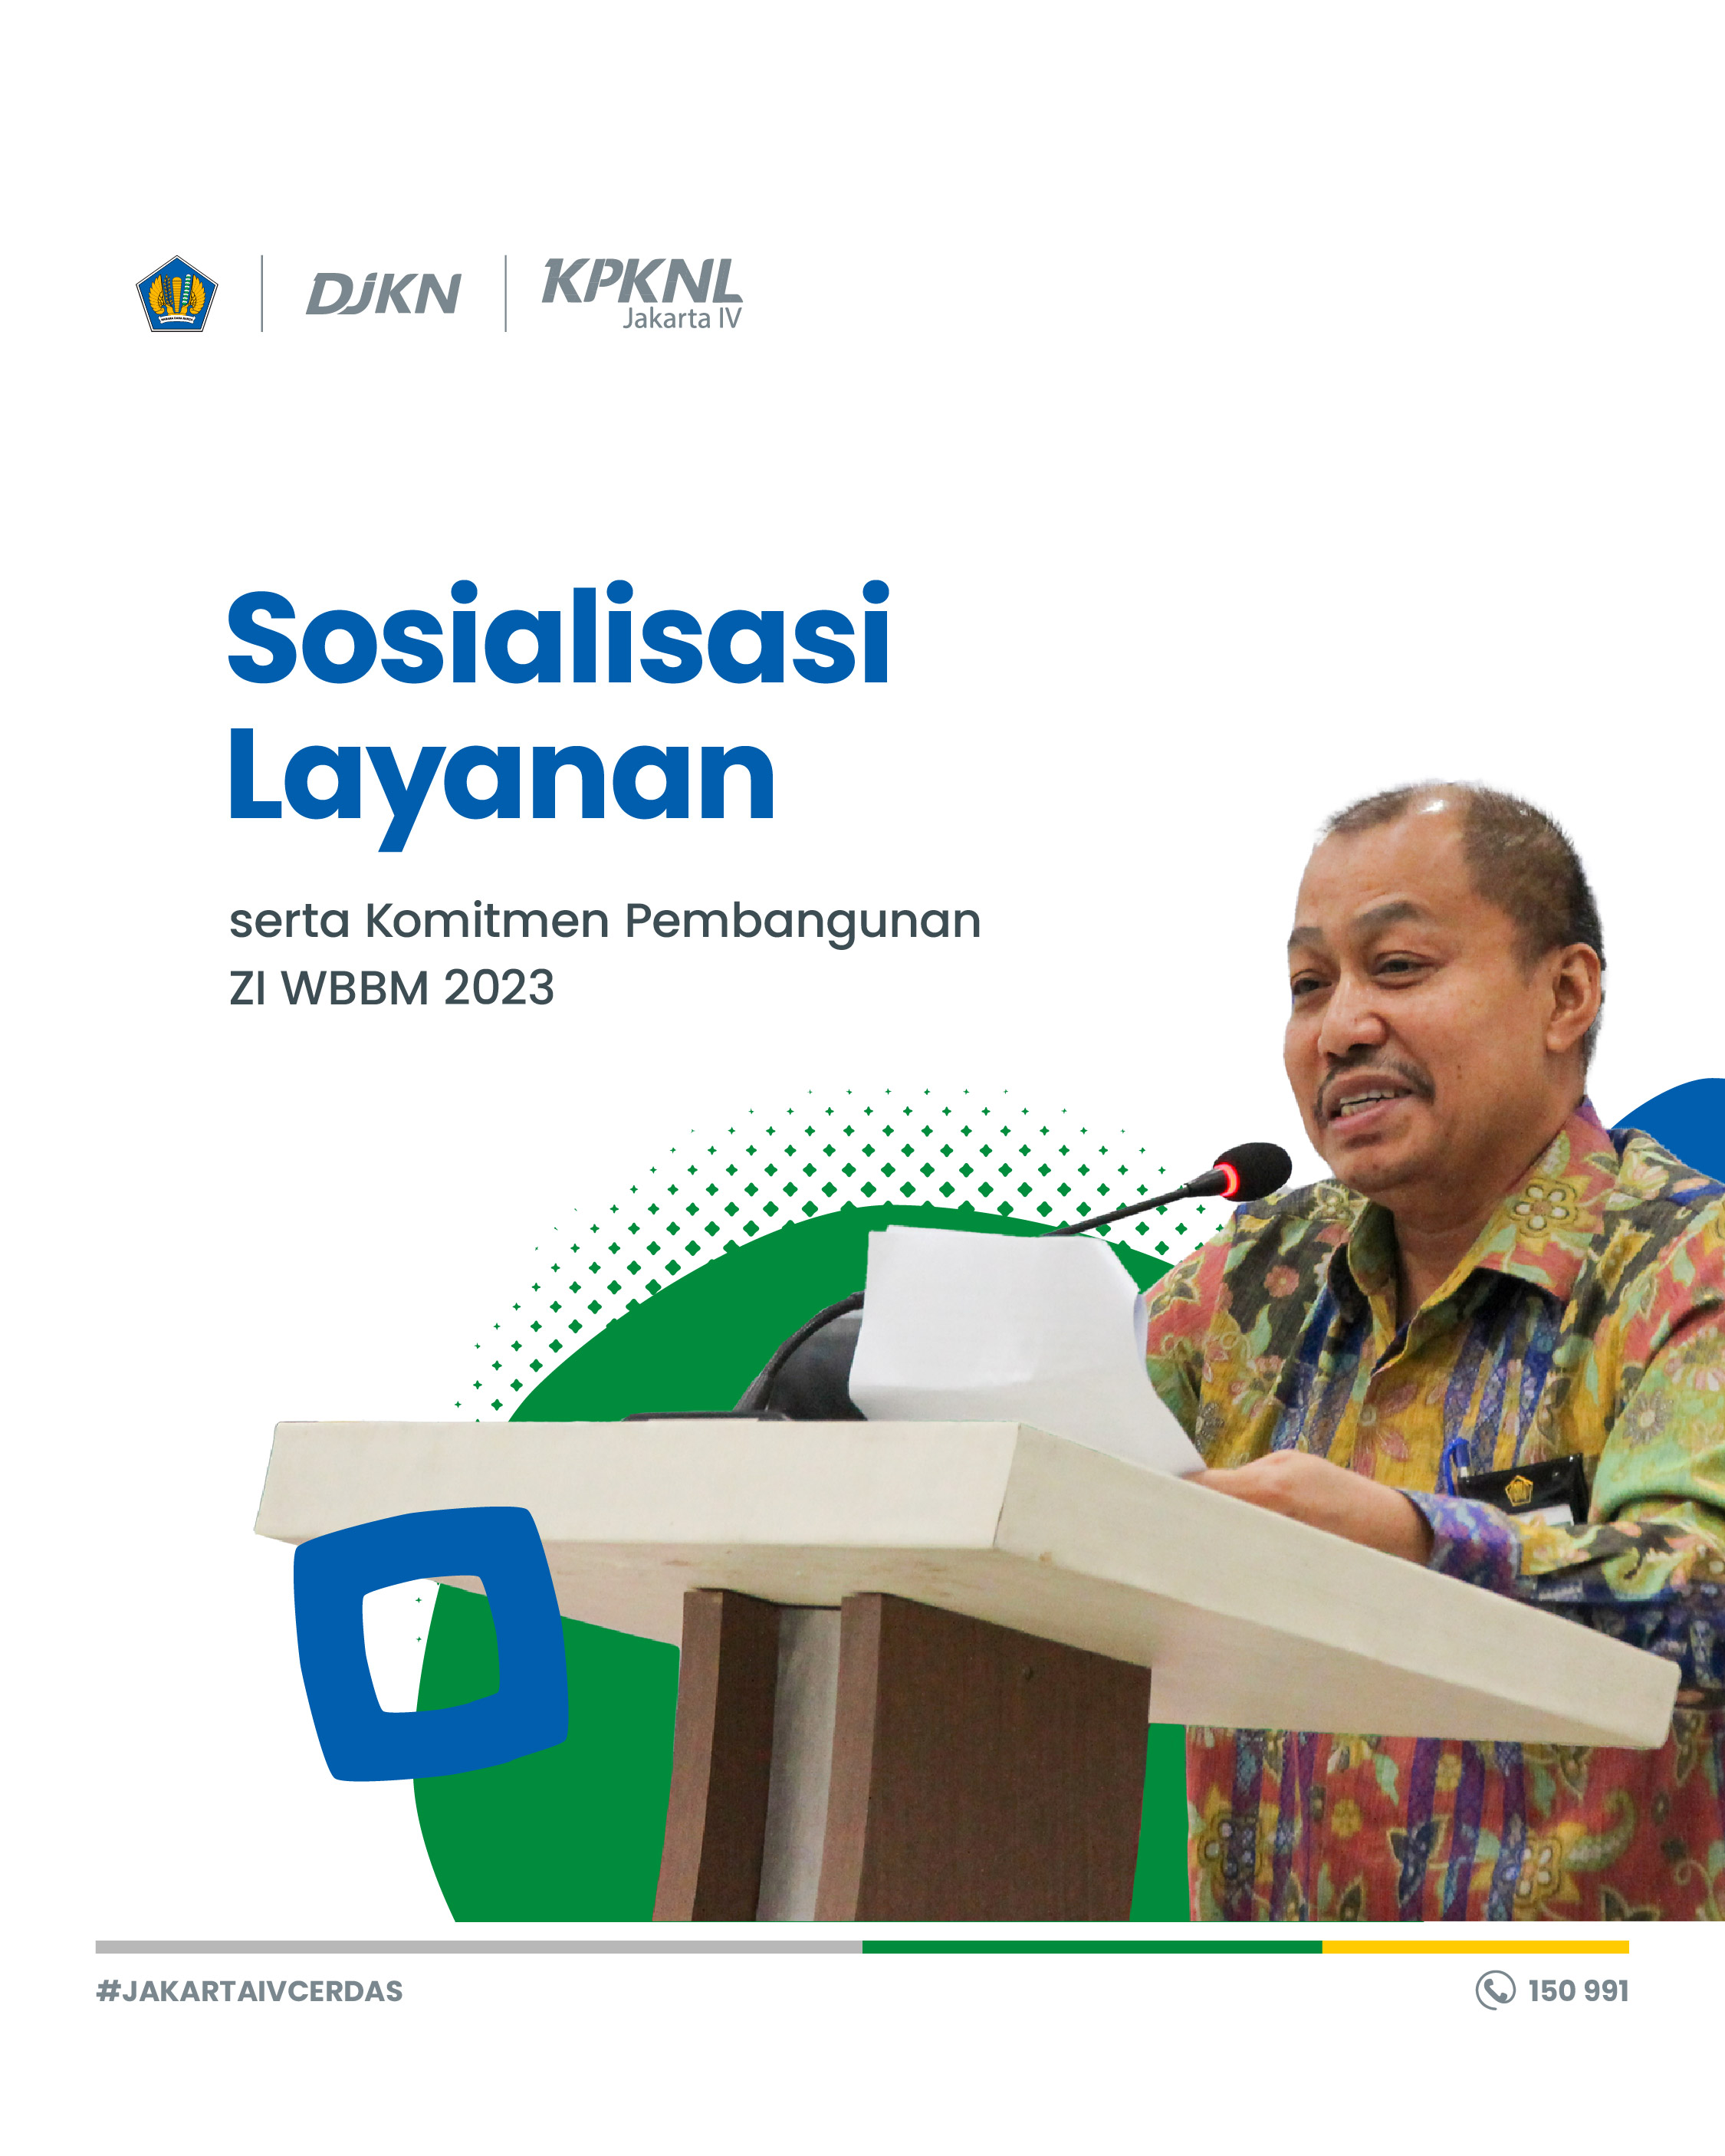 Sosialisasi Layanan dan Komitmen Pembangunan Zona Integritas WBBM KPKNL Jakarta IV